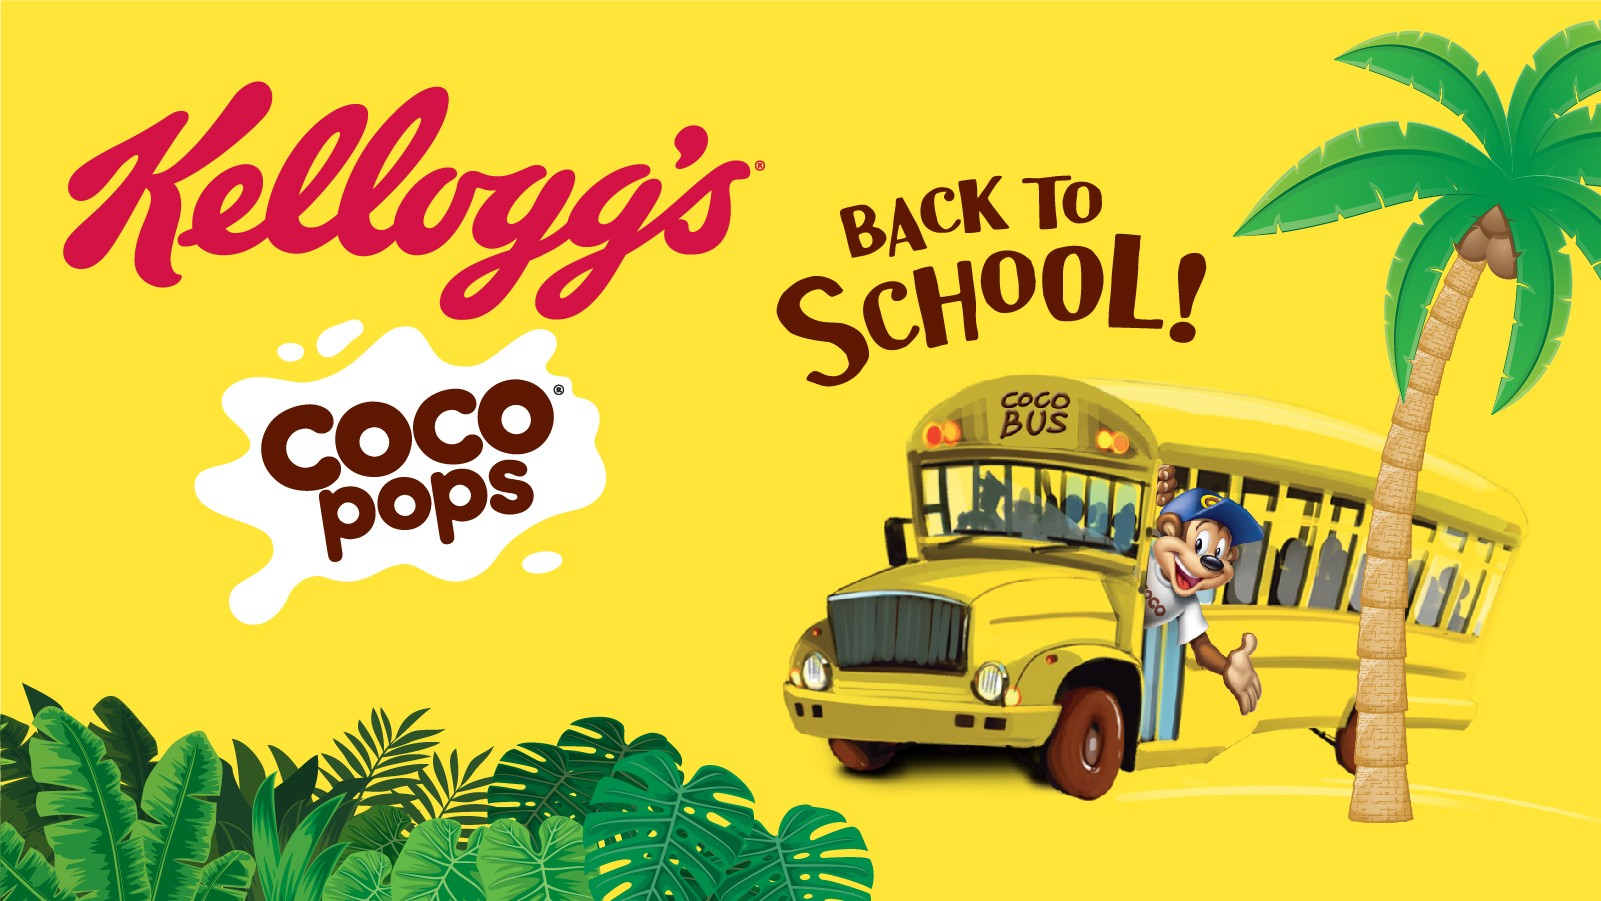 Τα αγαπημένα δημητριακά Kellogg’s Coco Pops ευχήθηκαν  «Καλή Σχολική Χρονιά» στους αγαπημένους τους φίλους!